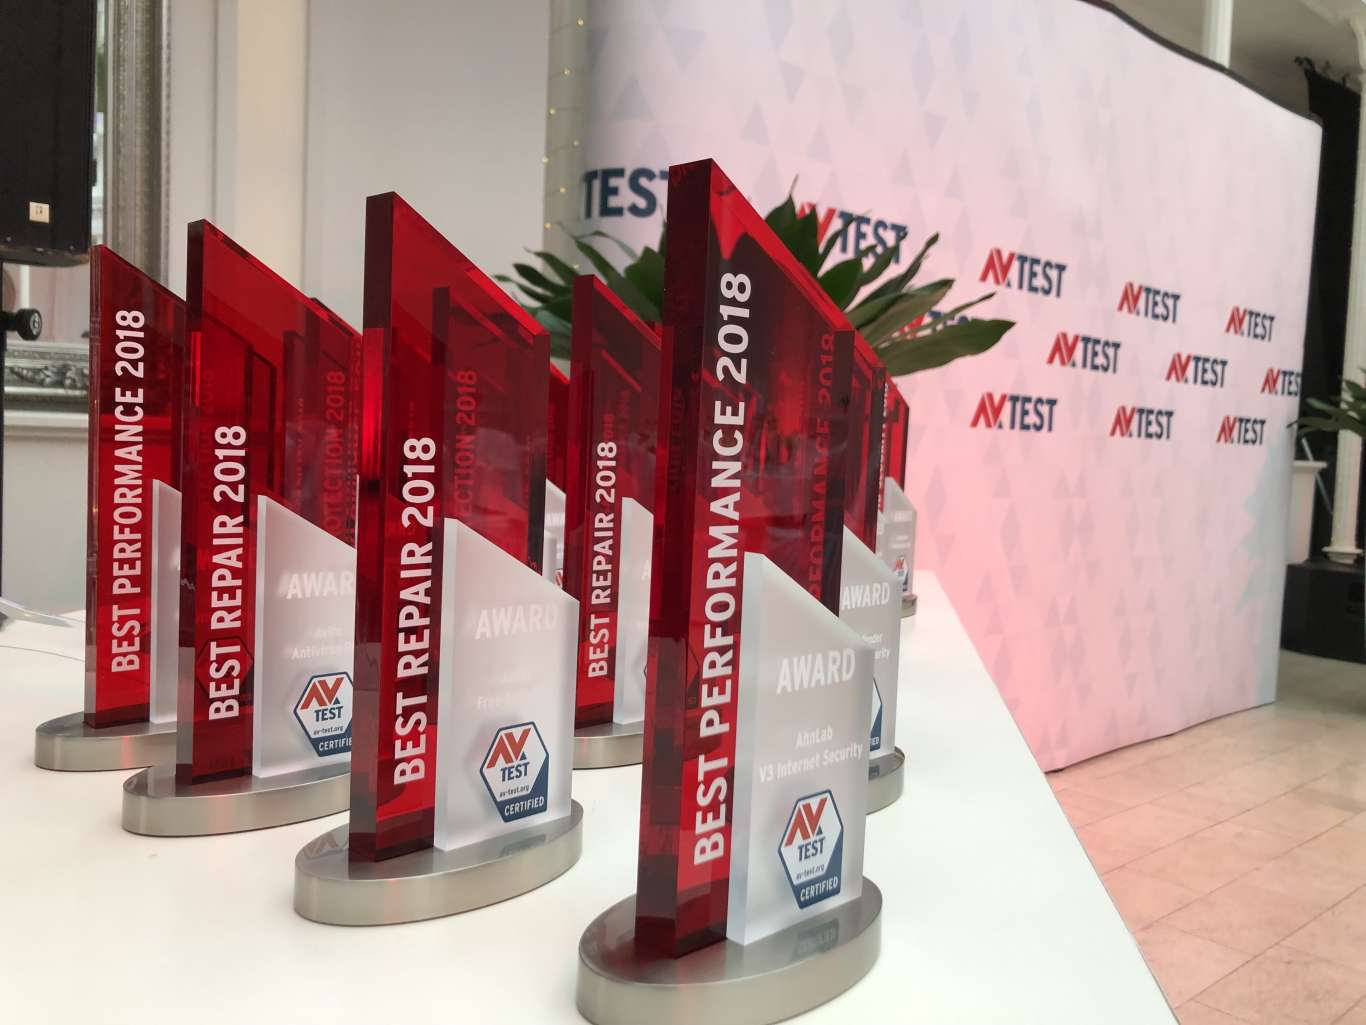 Die AV-Awards Preisverleihung in Erfurt. Ausgezeichnet wurden die Gewinner des Jahres 2018 in neun verschiedenen Kategorien.